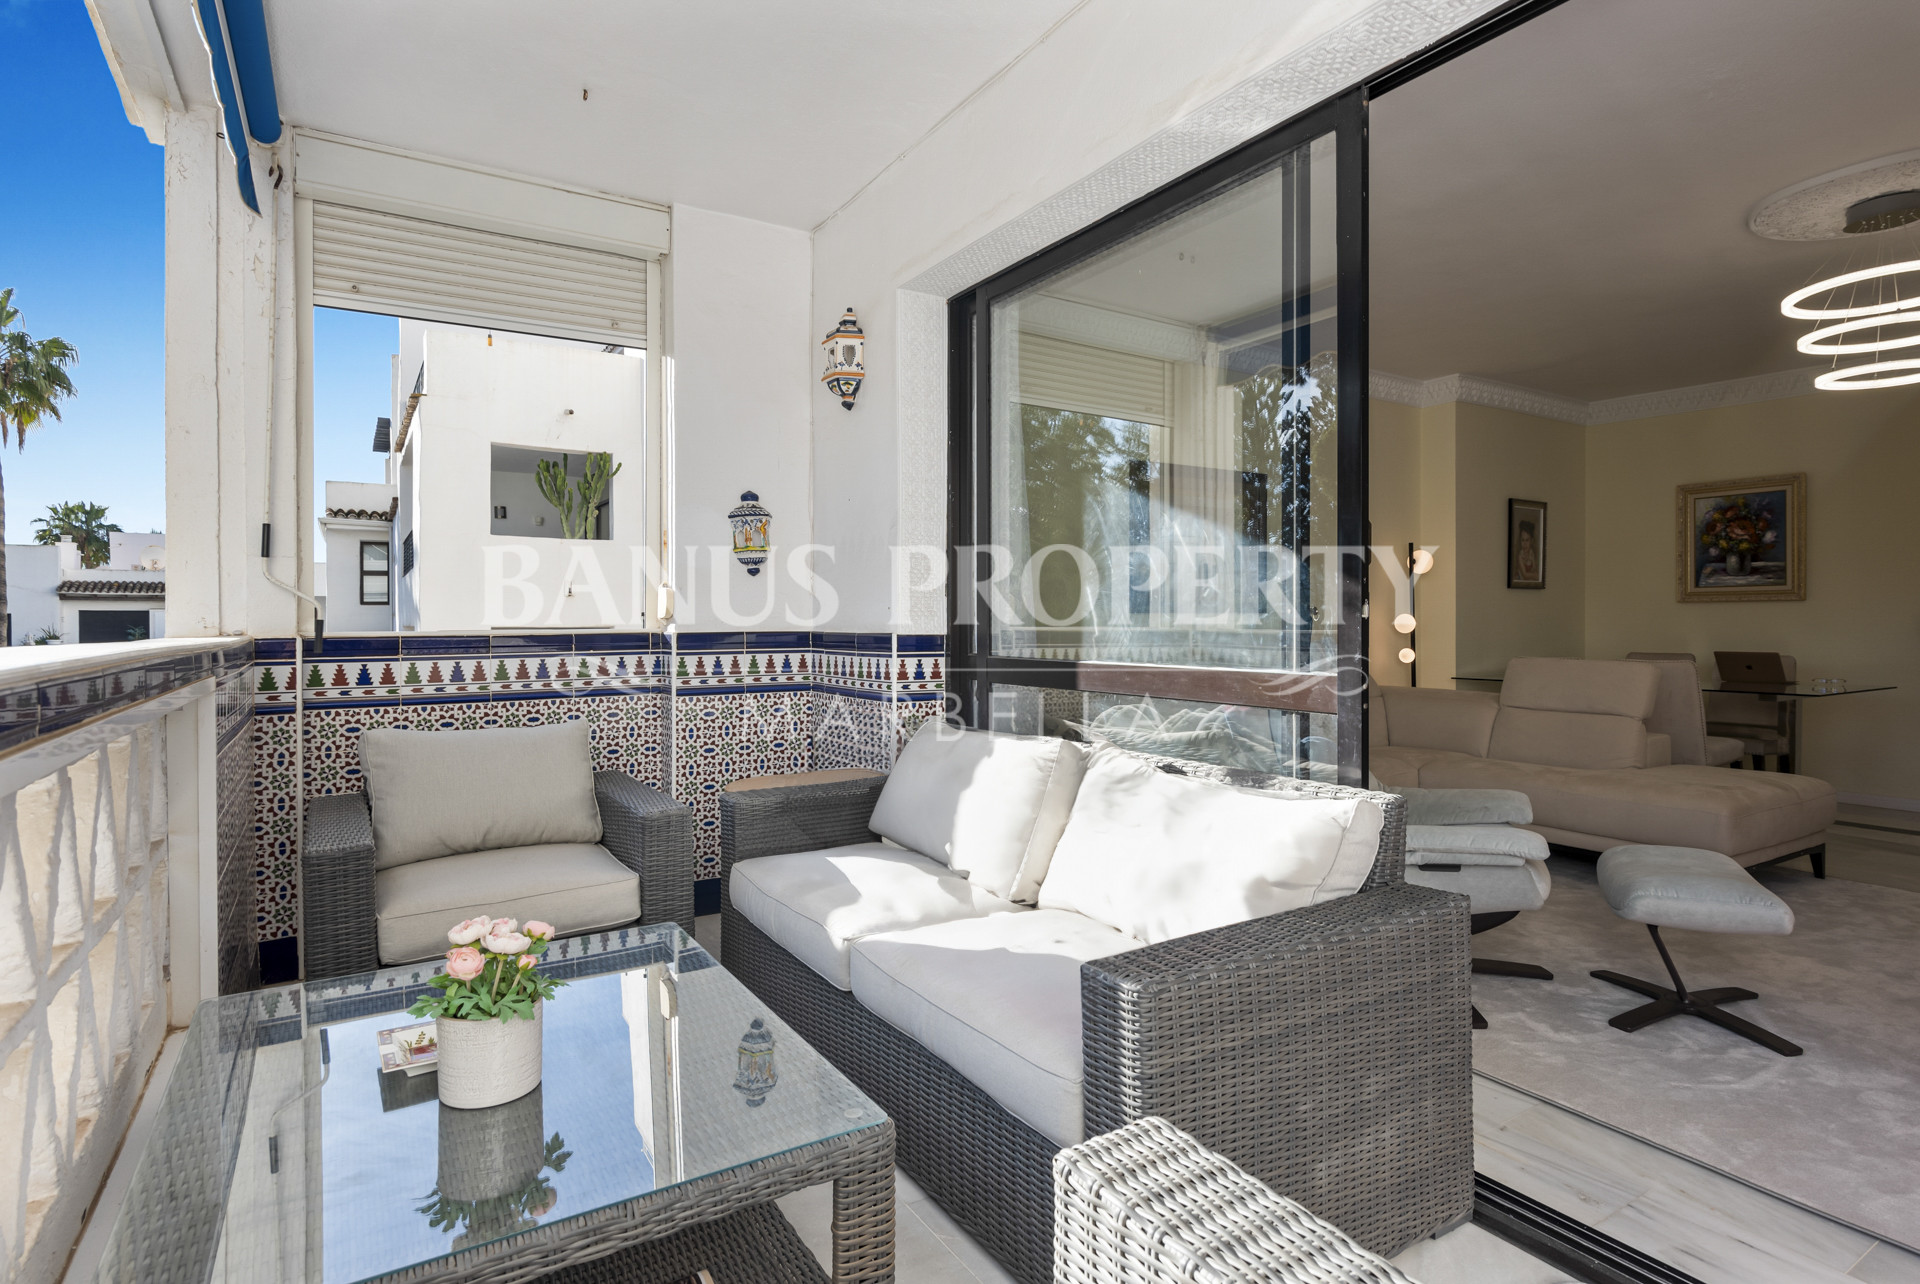 2- Bed- Apartment in with garden views in Playas del Duque- Puerto Banus